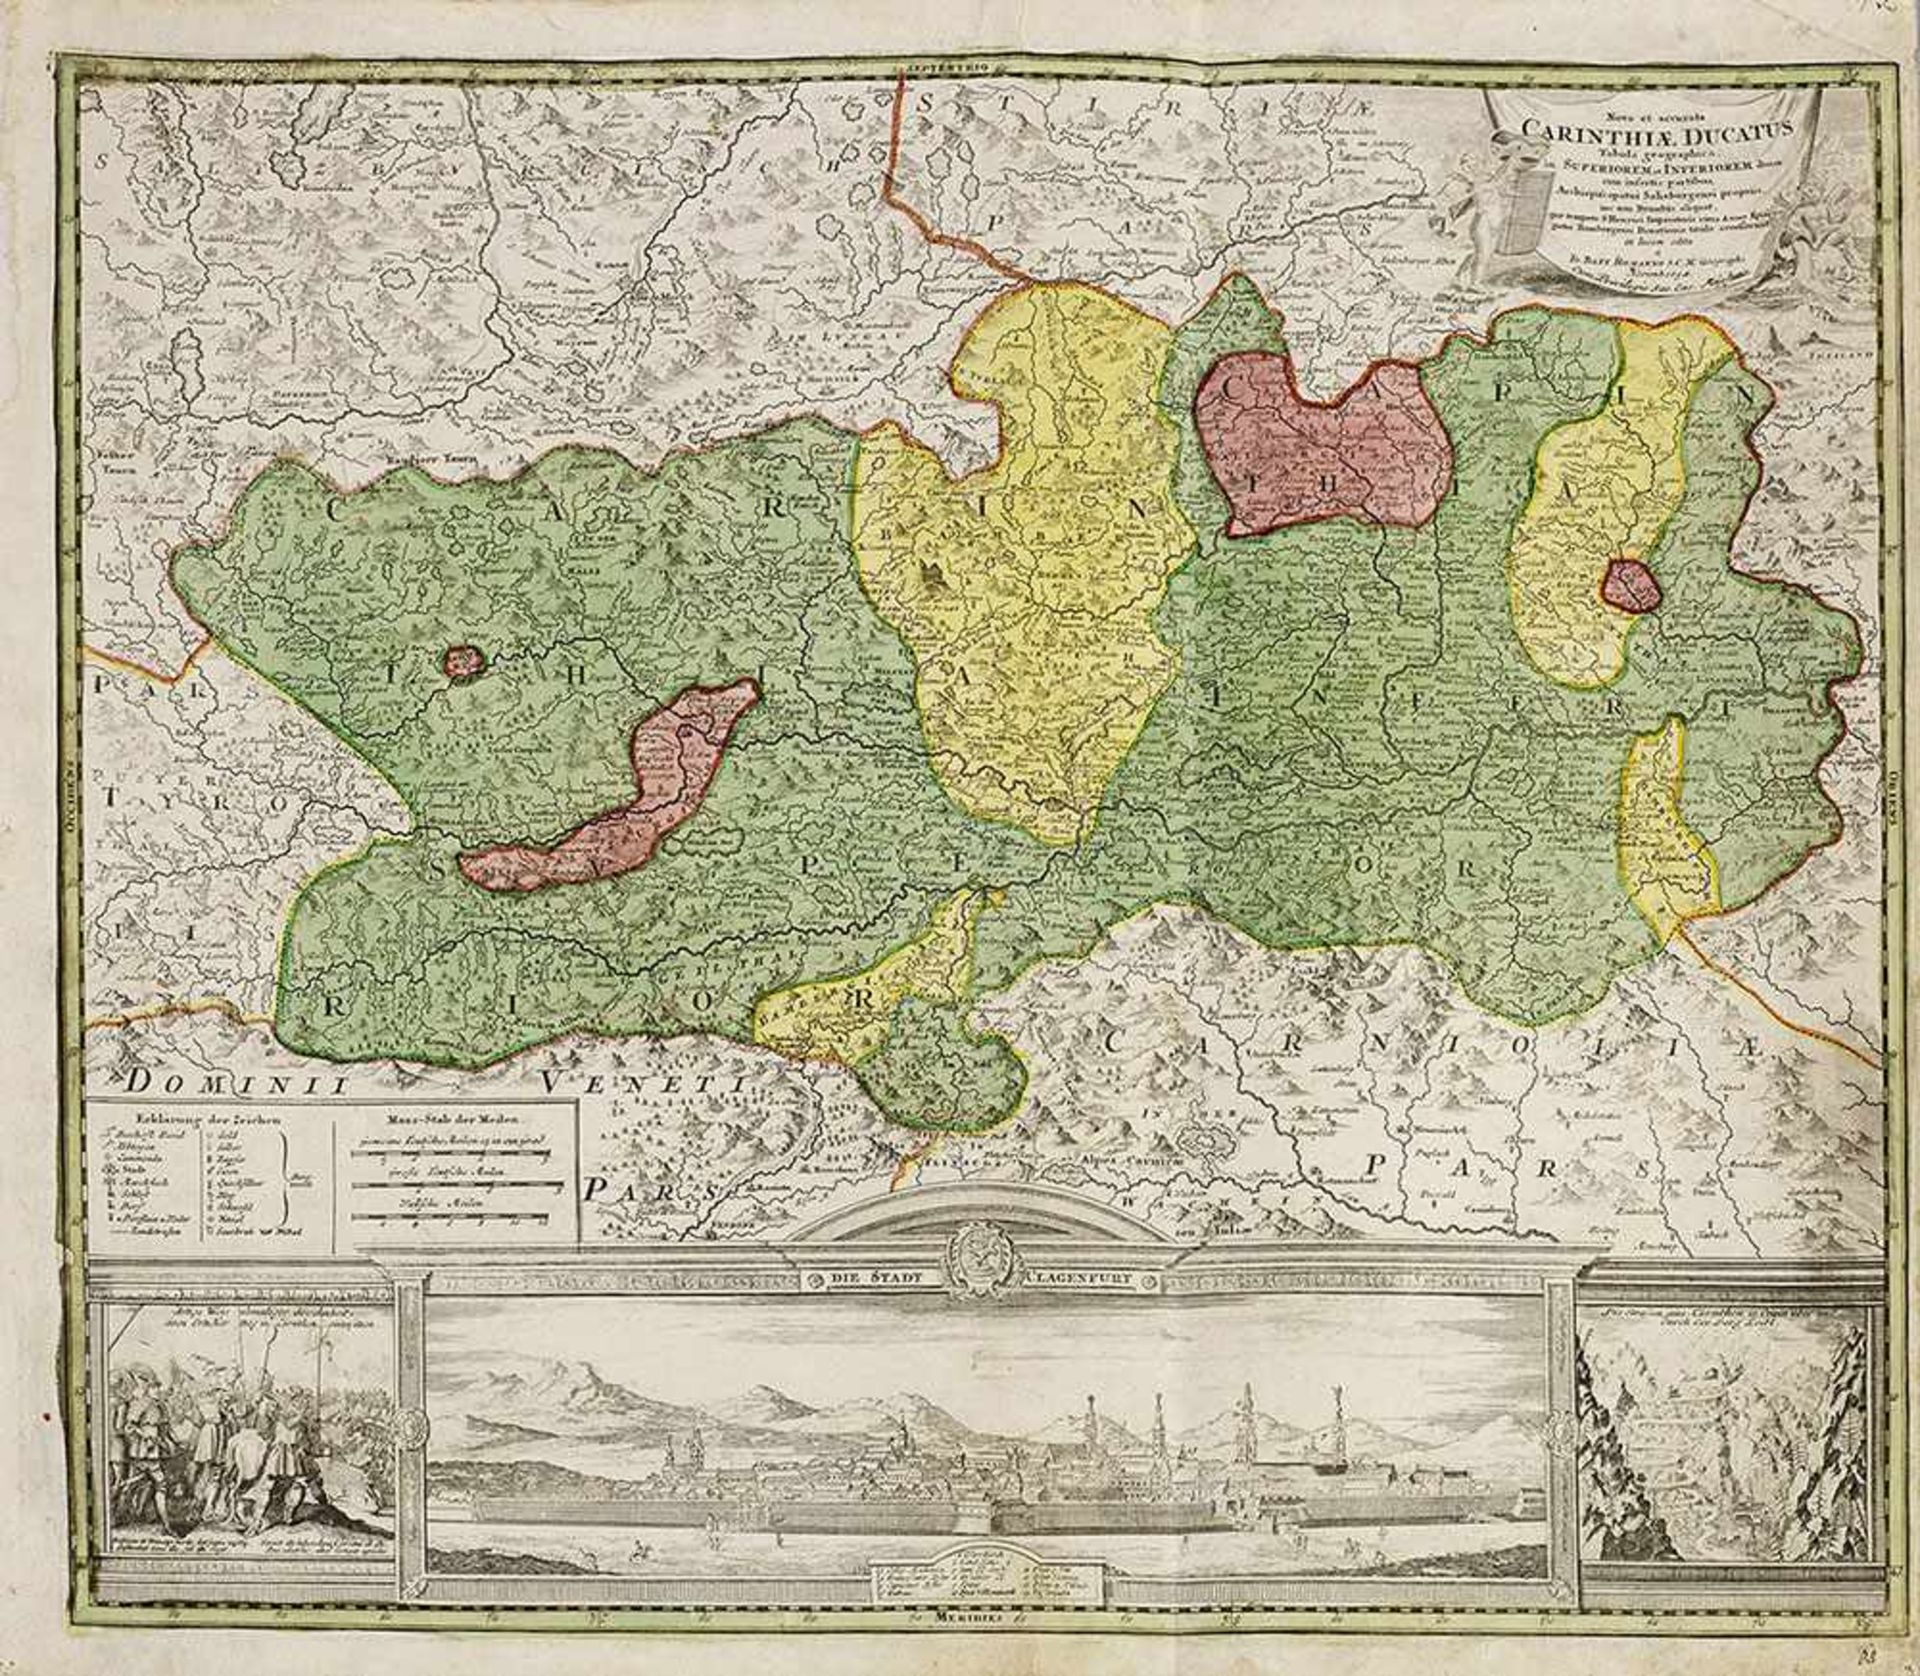 Landkarte von Kärnten mit Ansicht von Klagenfurt"Nova et accurata Carinthiae Ducatus (...)".